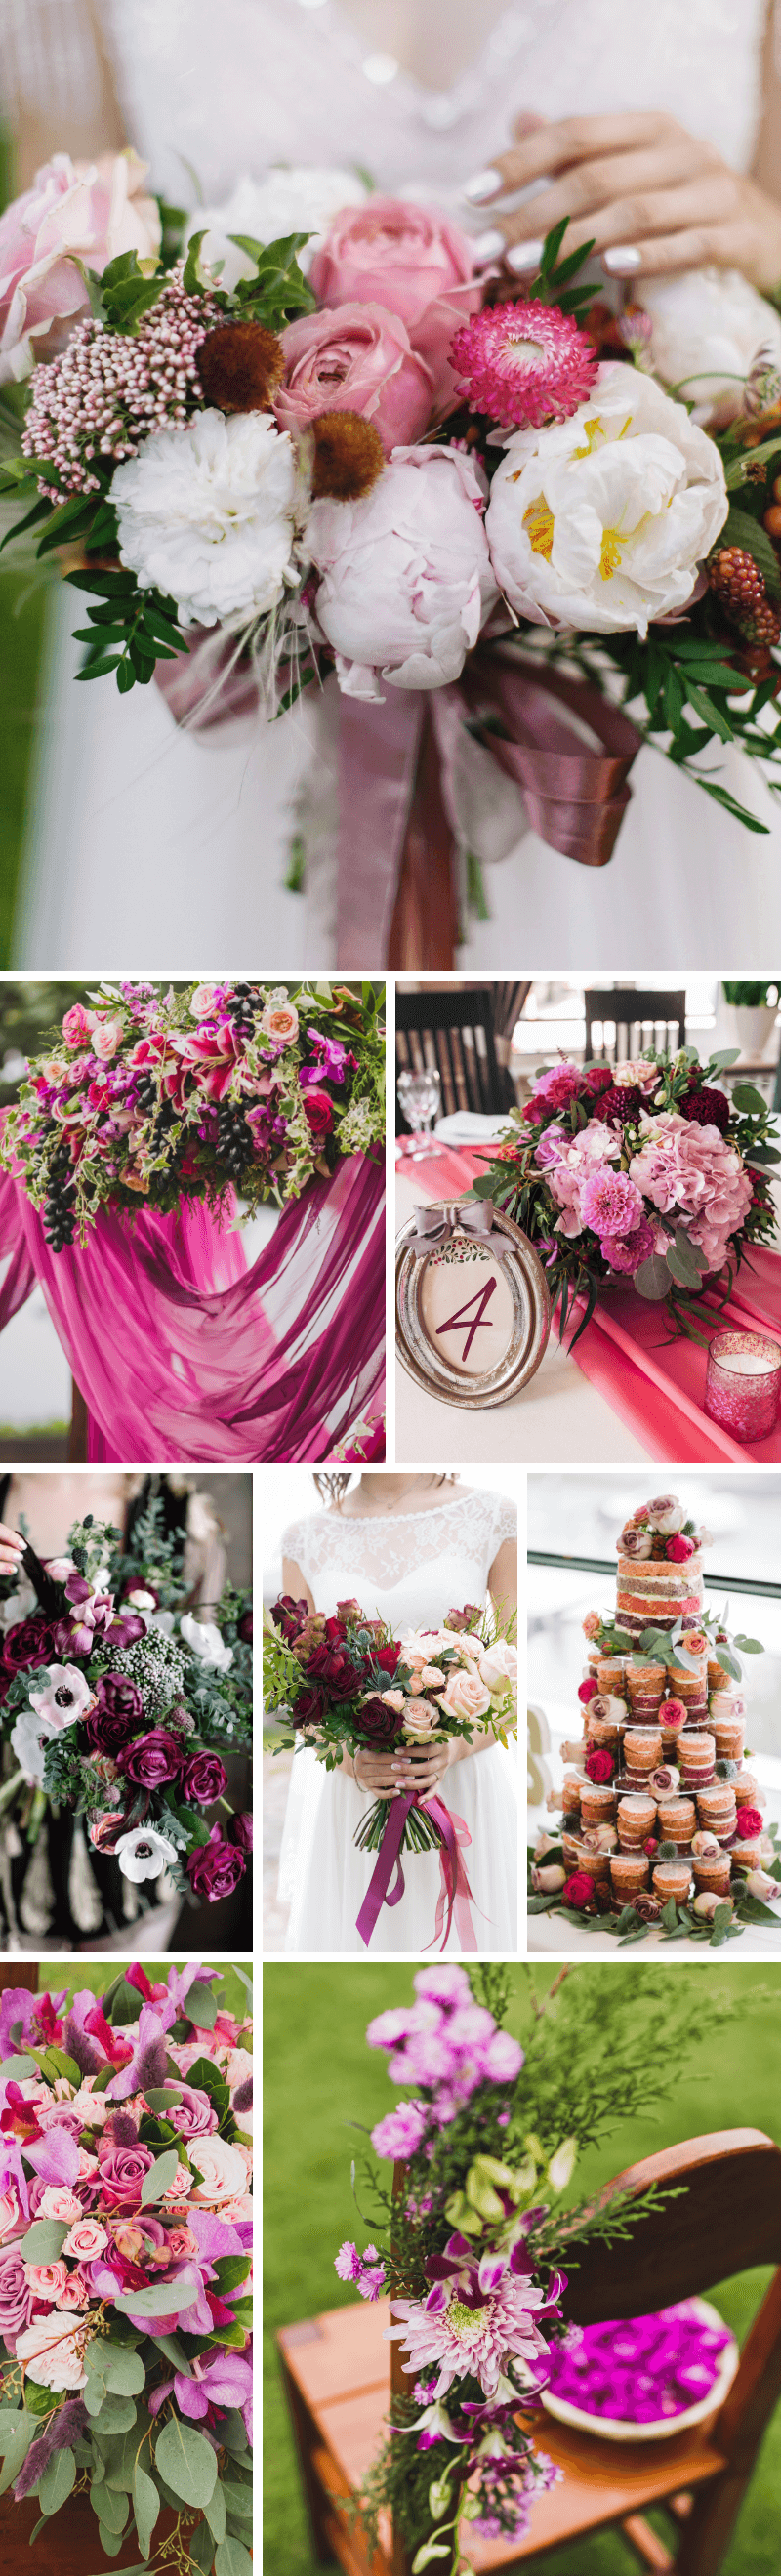 Hochzeitsfarben Trends, Hochzeit Farben, Hochzeitsinspirationen Farbpaletten, Hochzeitstrends